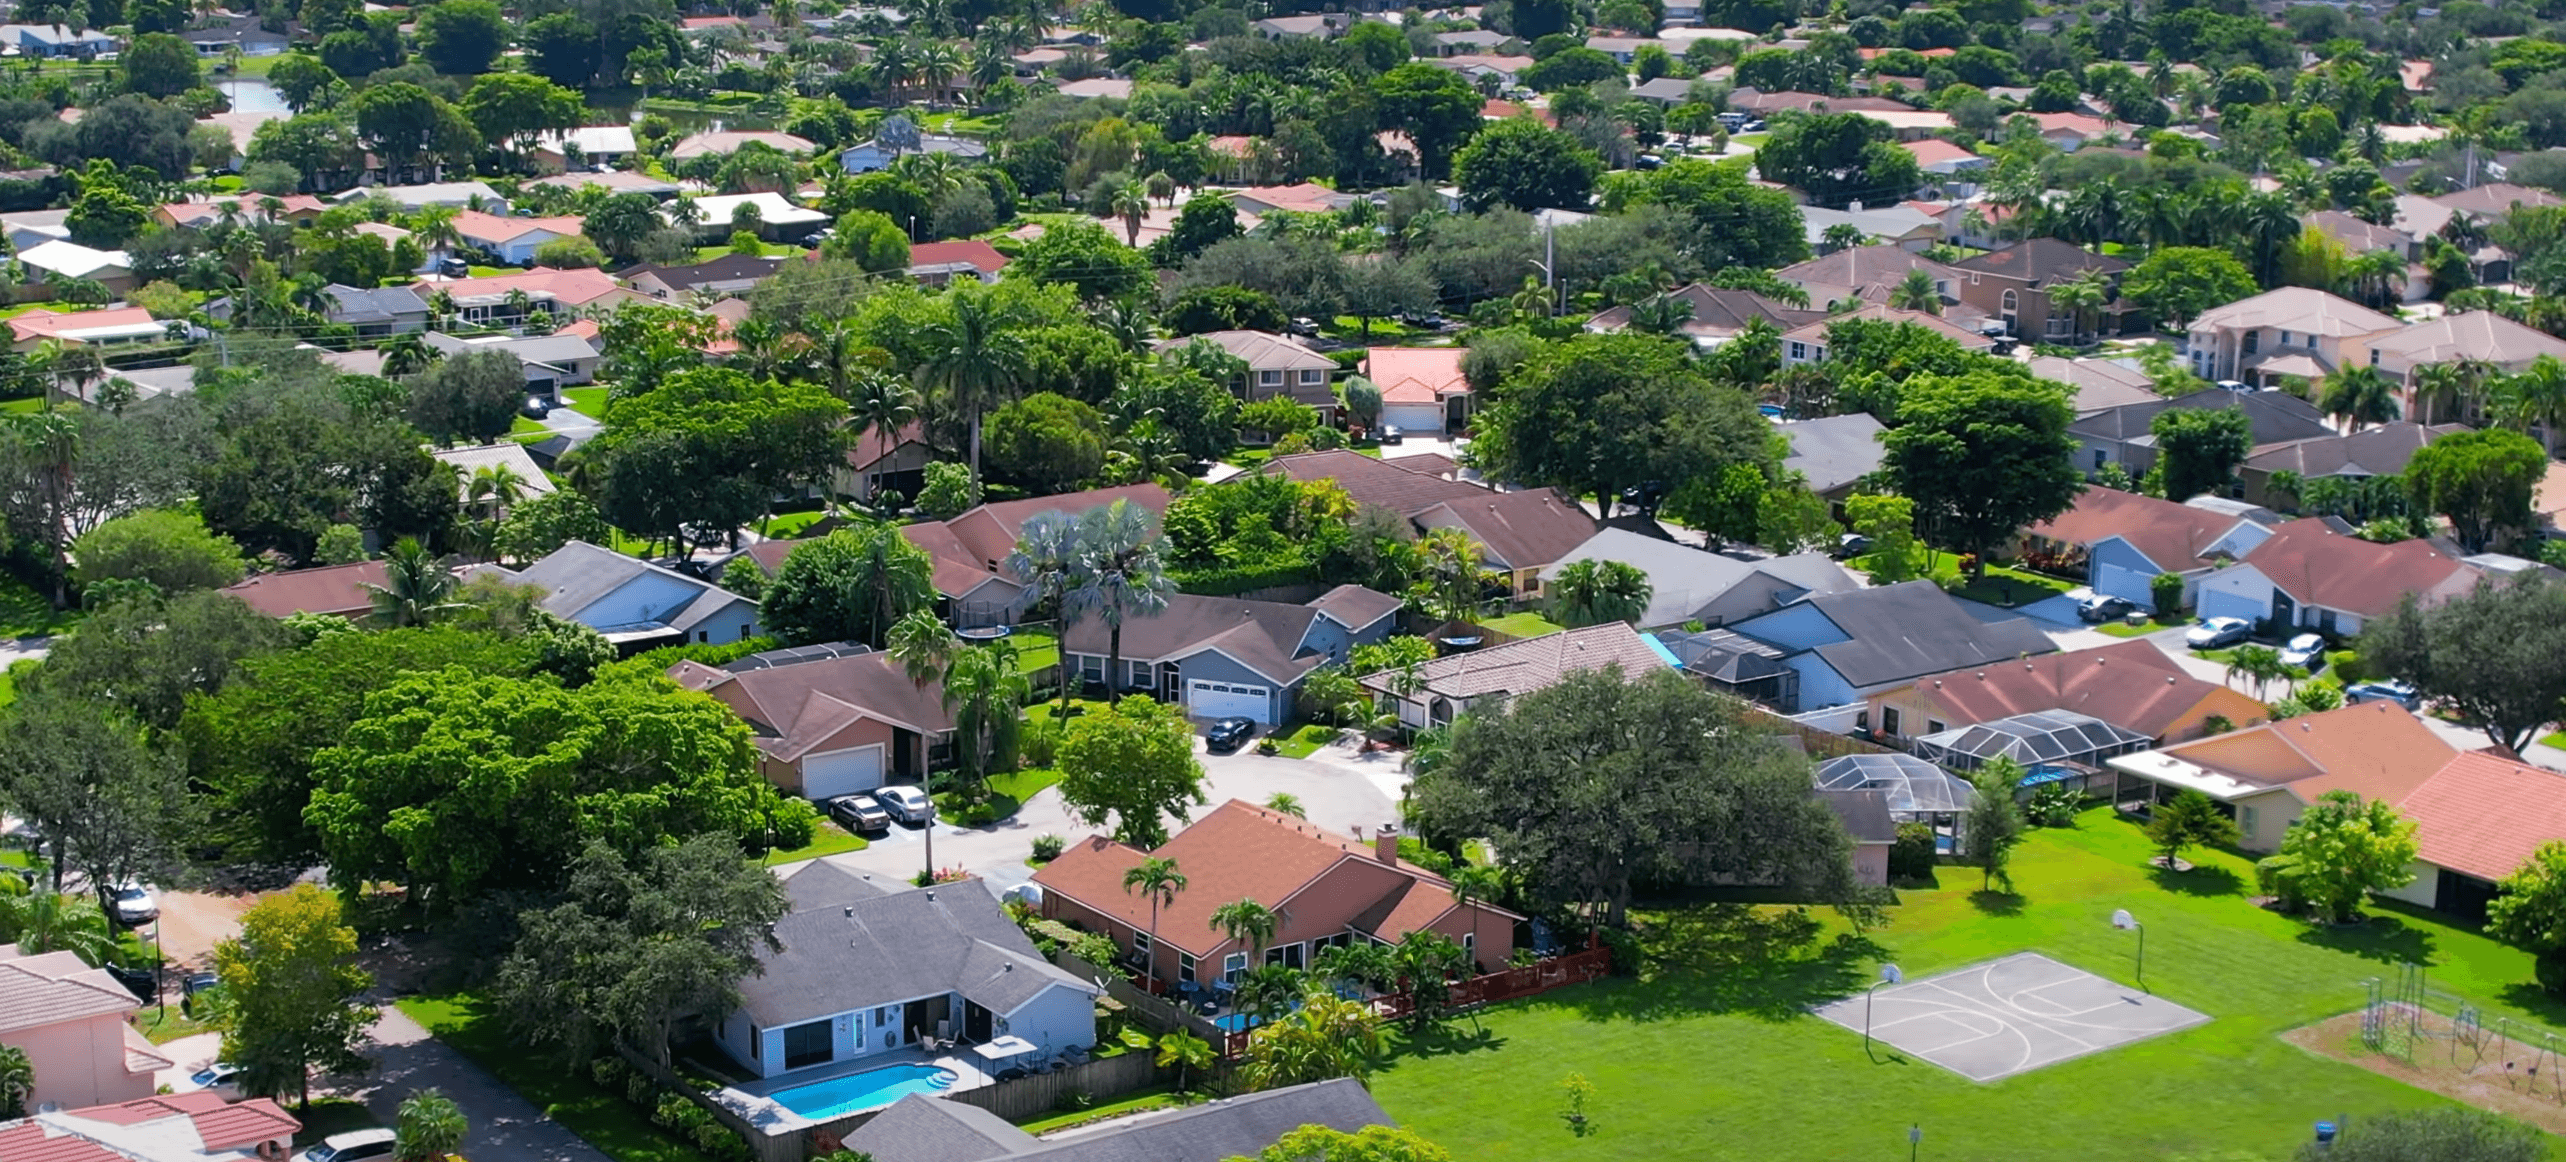 Coral Springs aerial view